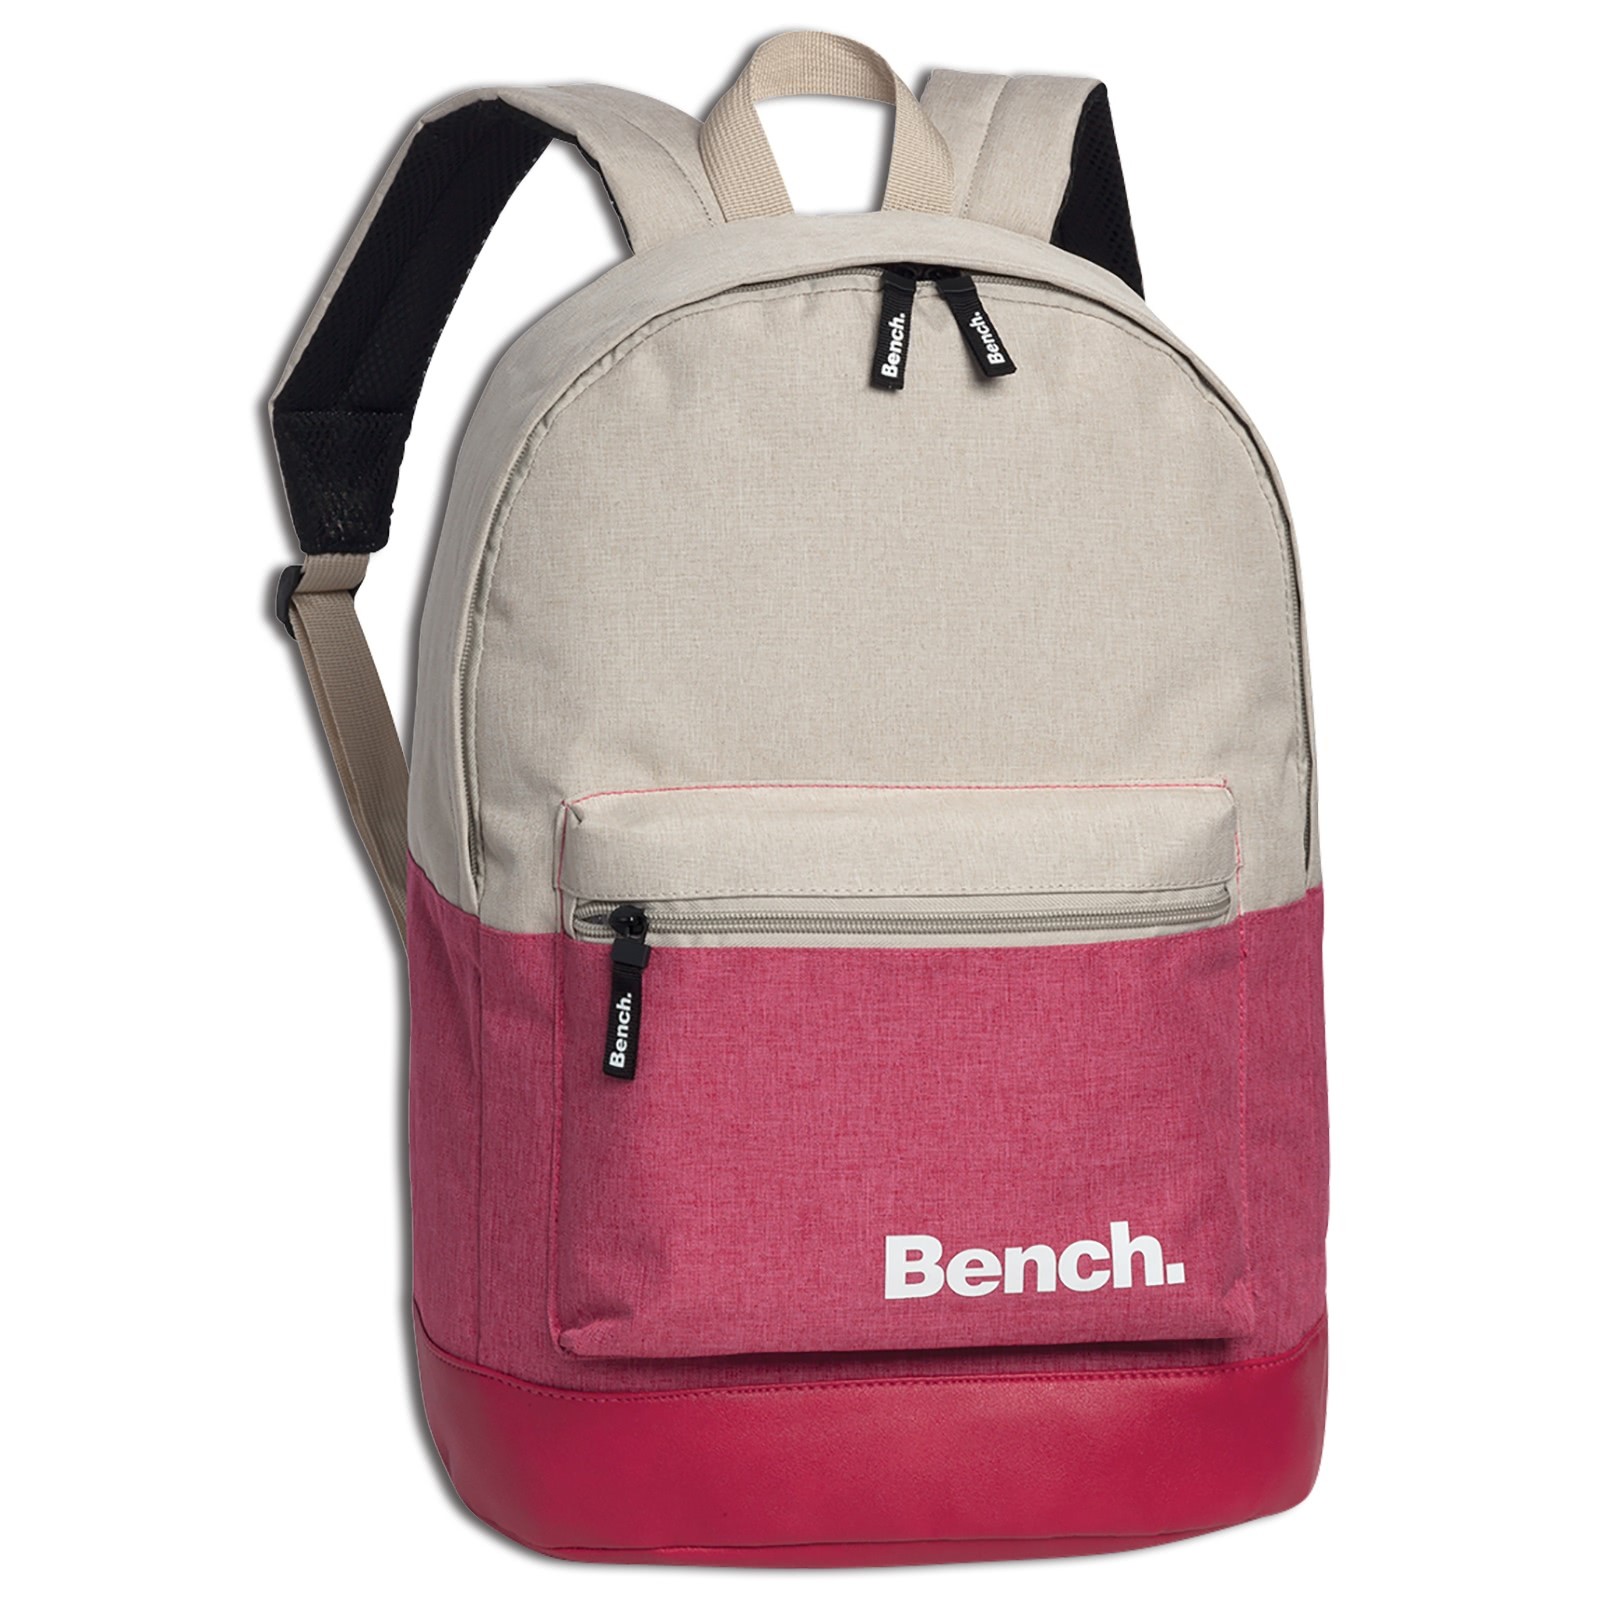 Bench sportlicher Rucksack Polyester PU pink sand ORI301P